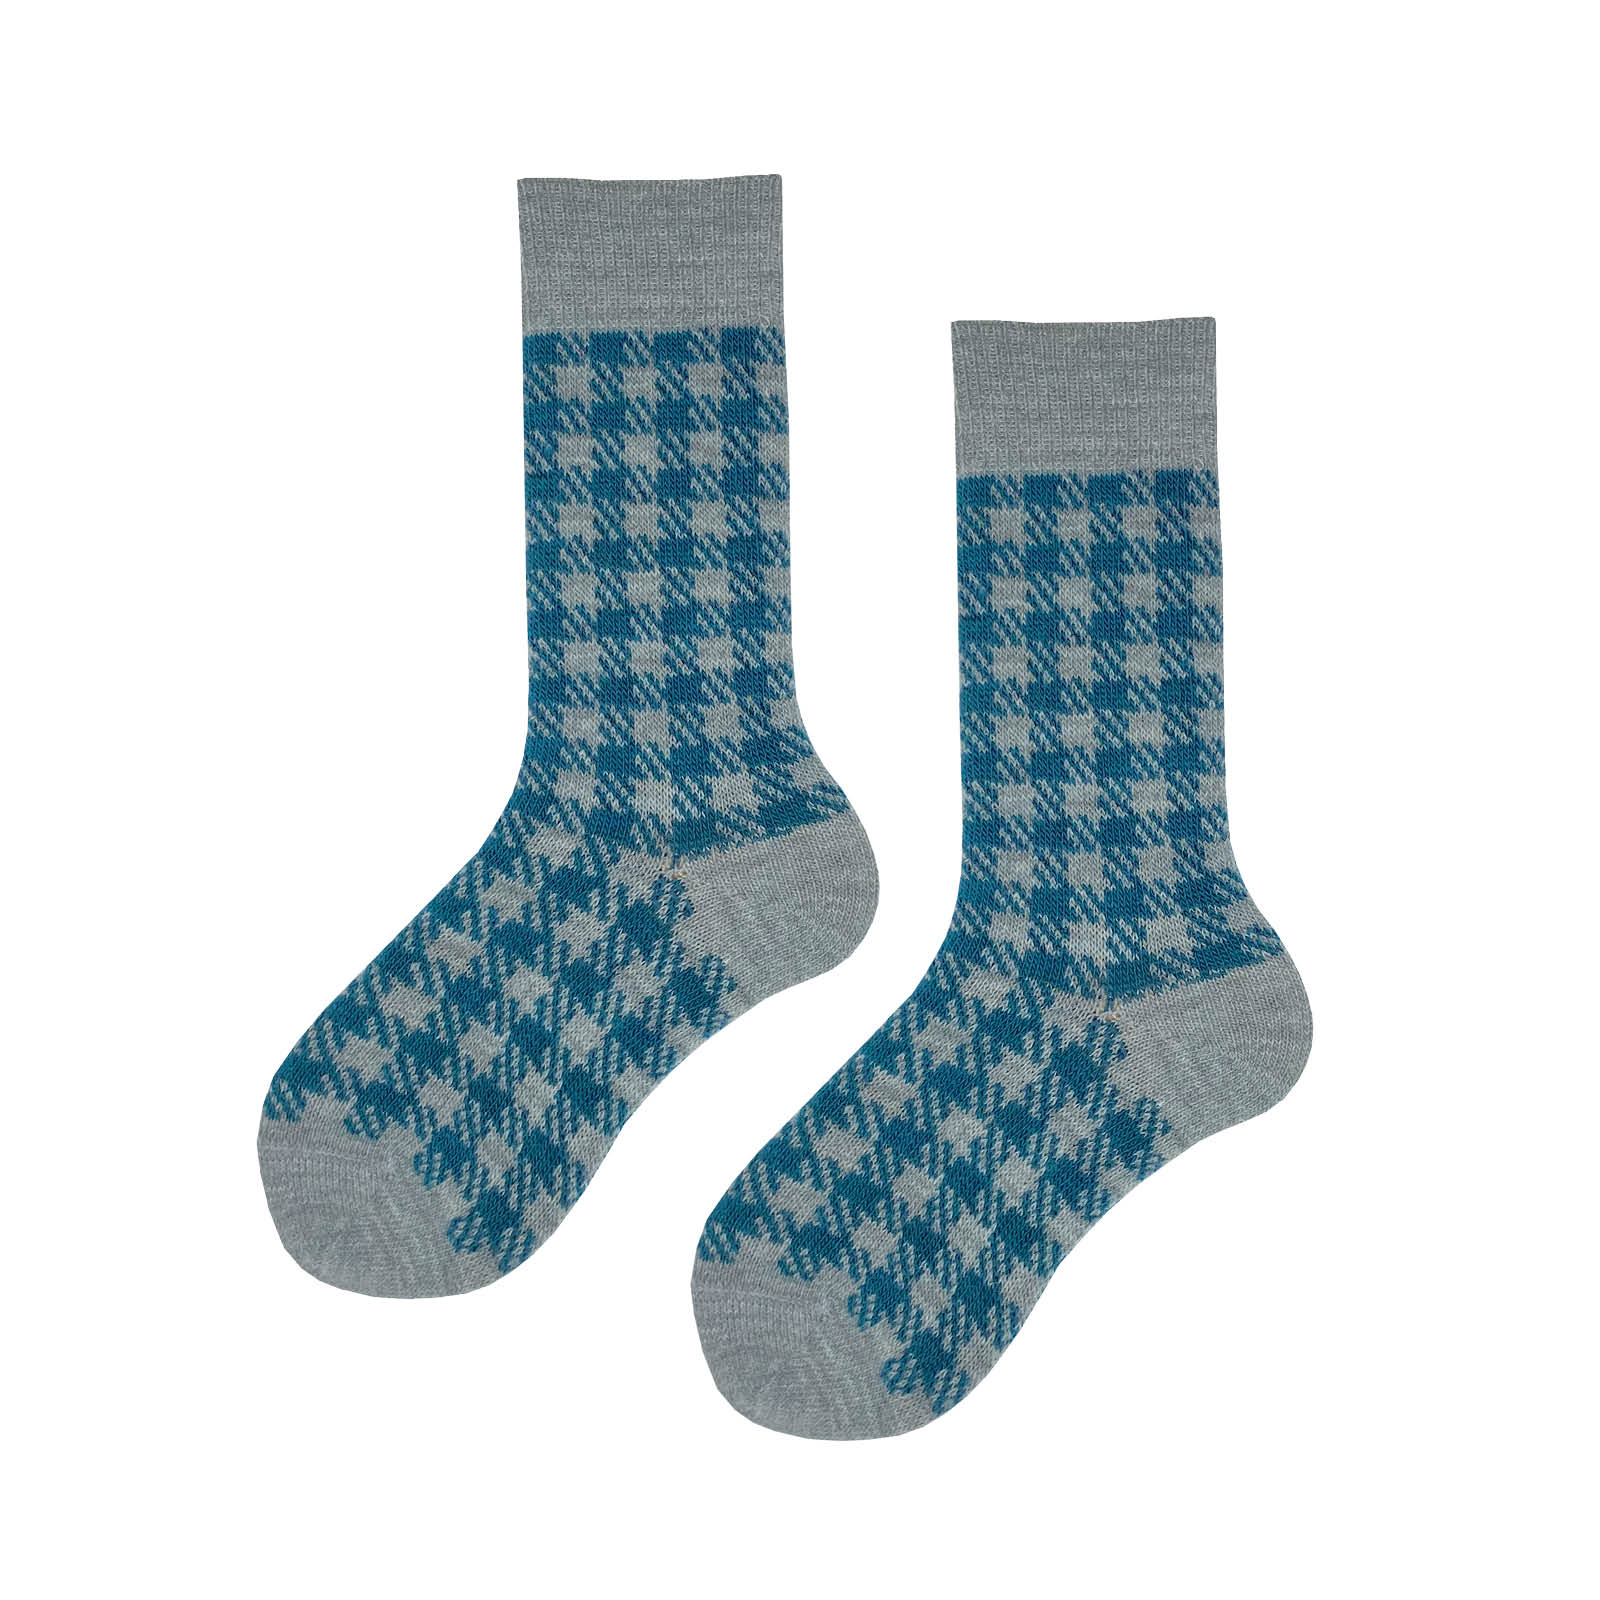 HUDSON Damen GLENCHECK -  35/38 - Socken mit klassischer Glencheck-Musterung - Maya (Blau)